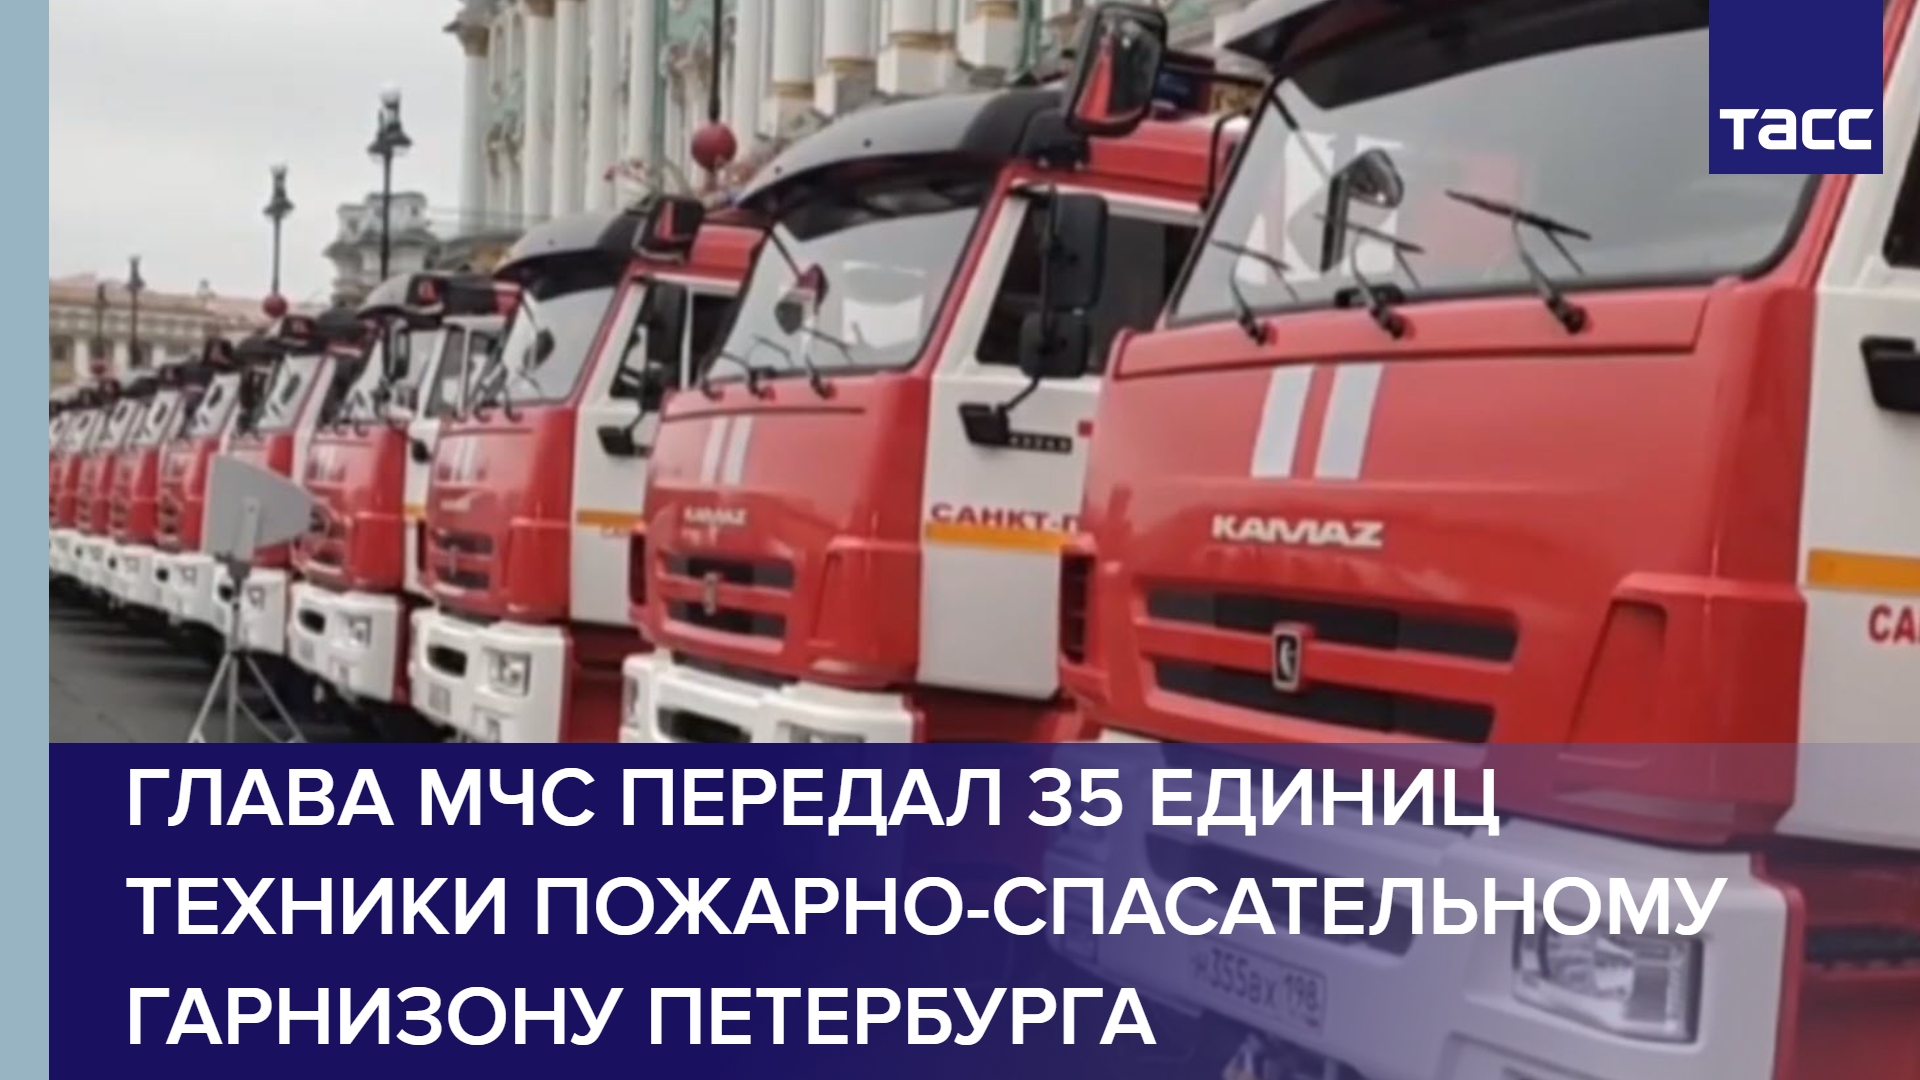 Глава МЧС передал 35 единиц техники пожарно-спасательному гарнизону Петербурга